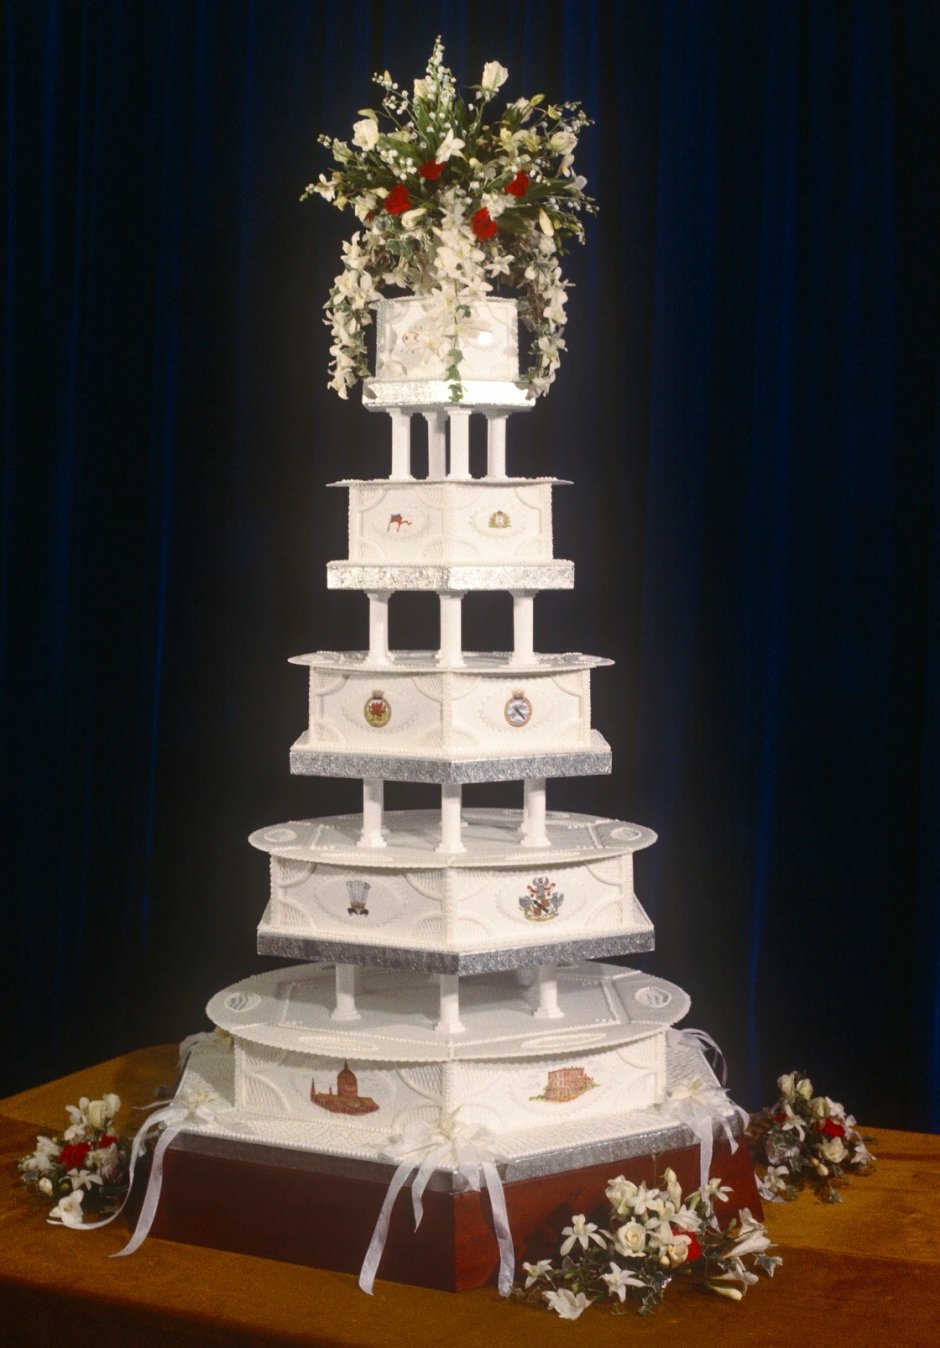 Кусок торта со свадьбы принцессы Дианы и принца Чарльза